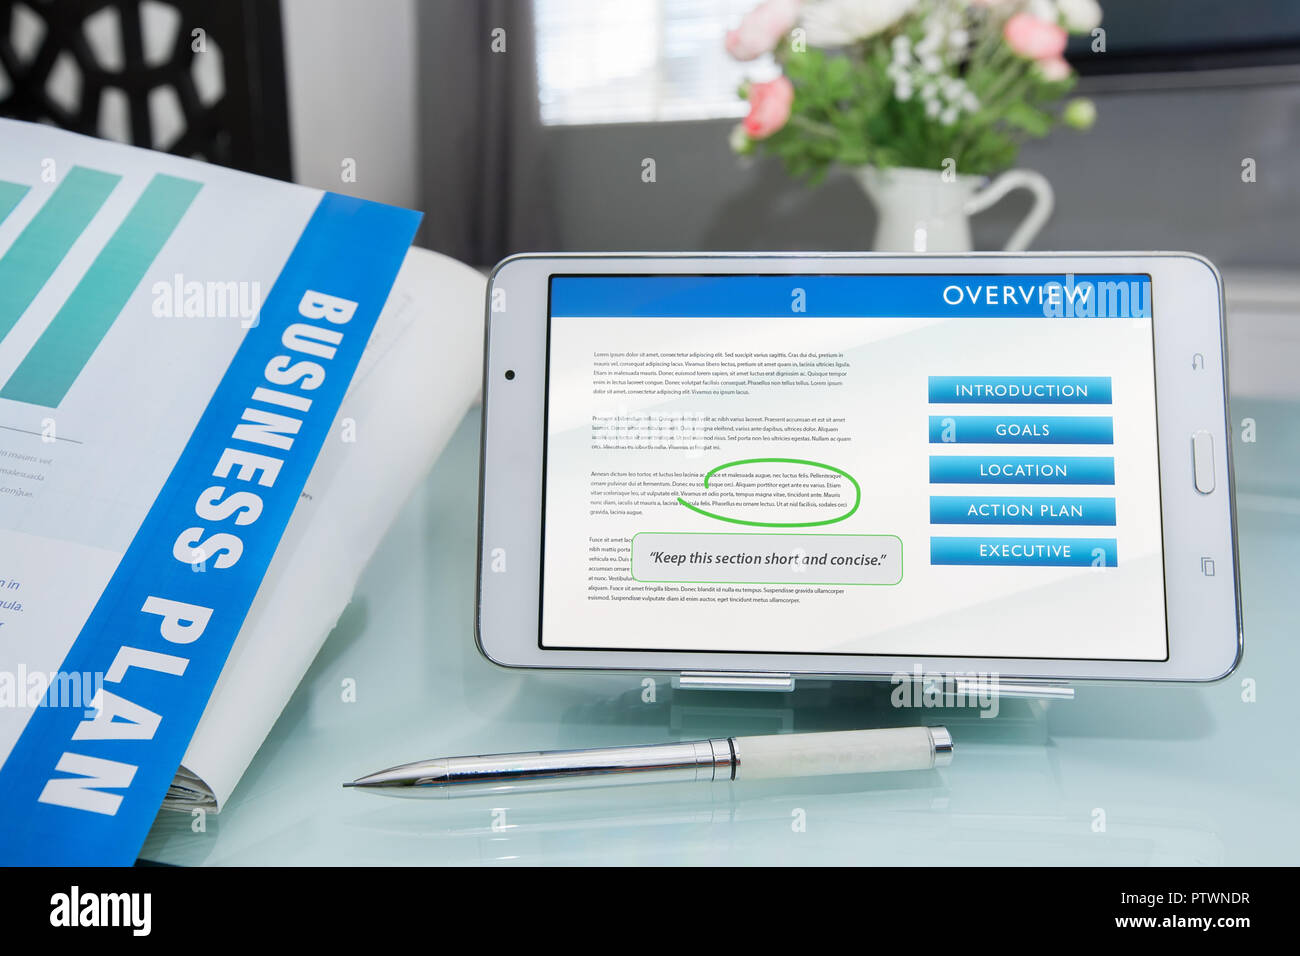 Phasen des Schreibens eines Businessplan Ziele zu treffen, gedruckte Dokument mit Stift und Änderungen auf Tablet-PC oder mobilen Gerät. Stockfoto